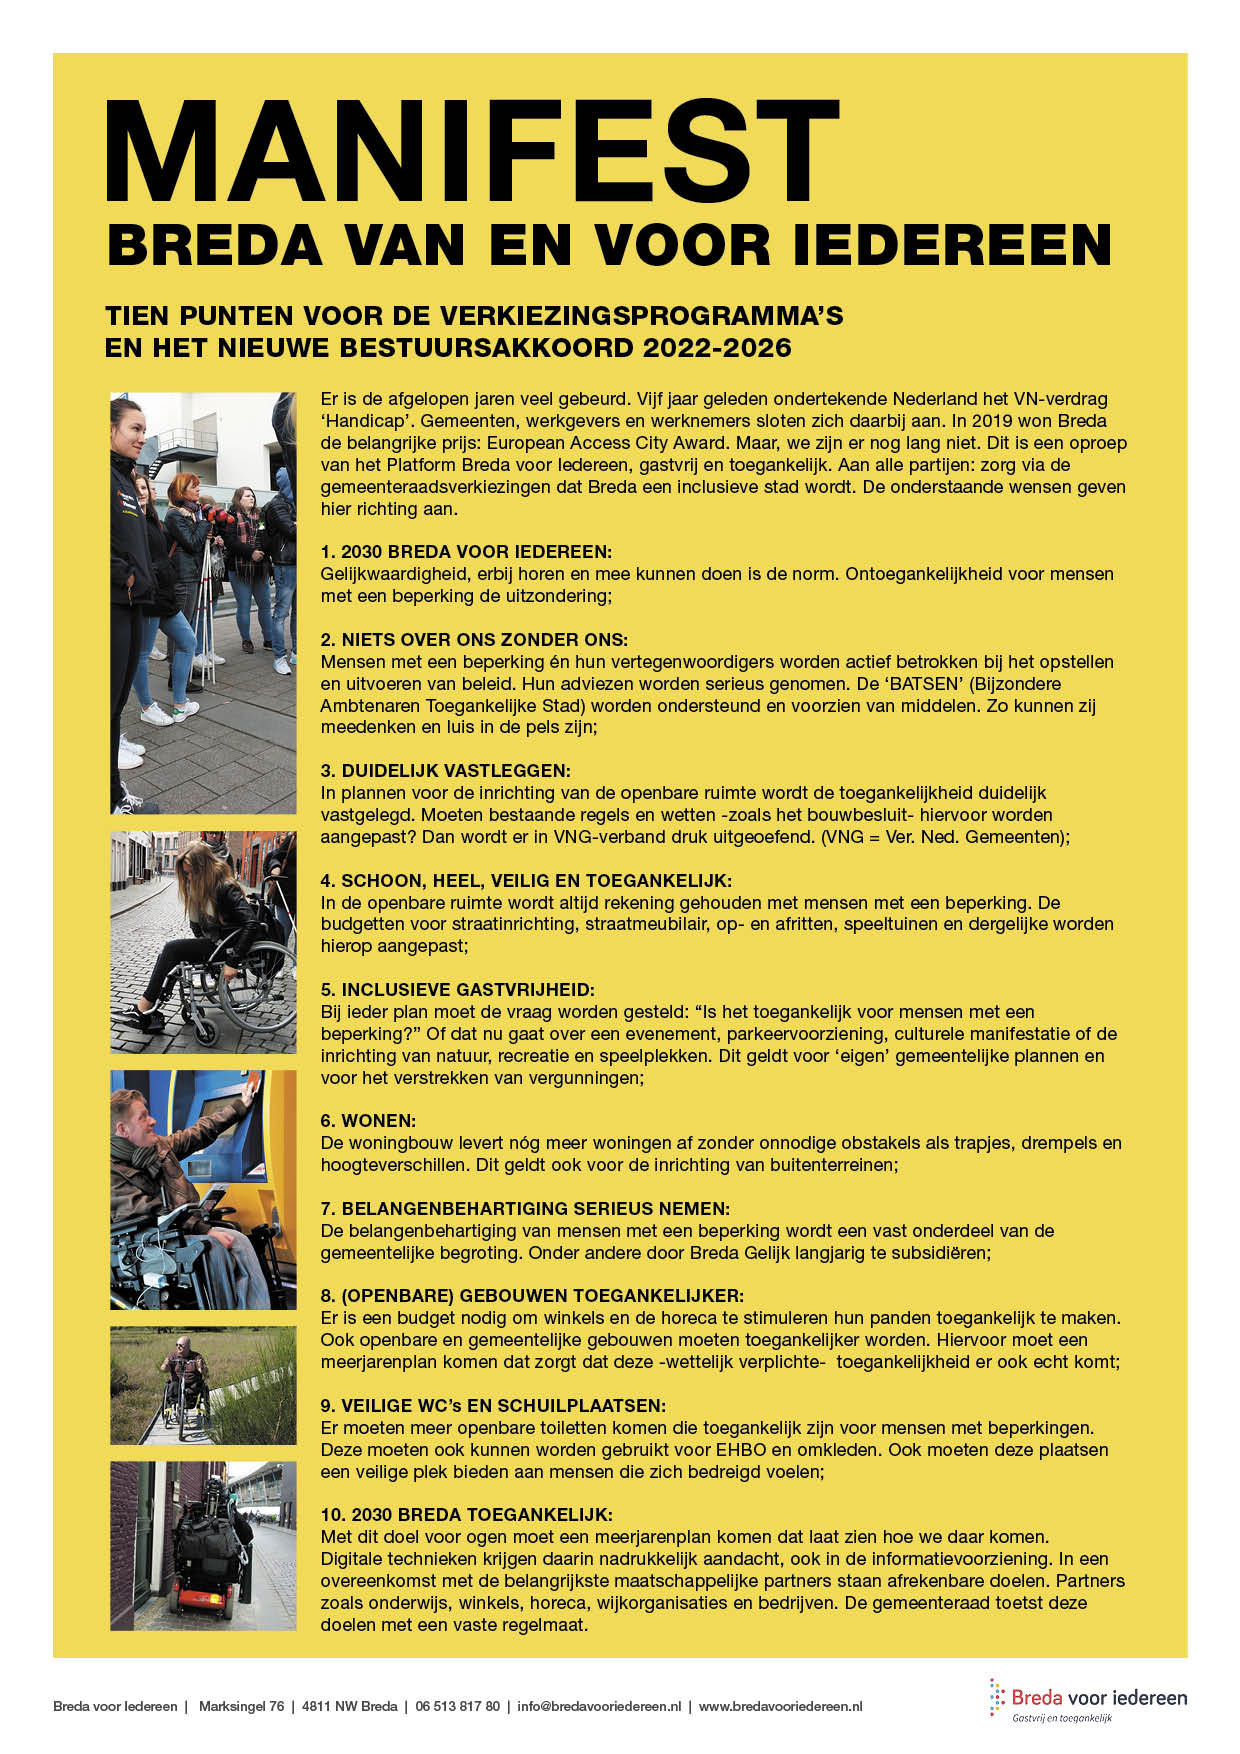 Afbeelding van het manifest Breda van en voor iedereen, met hierin 10 punten voor de verkiezingsprogramma's en het nieuwe bestuursakkoord 2022 2026